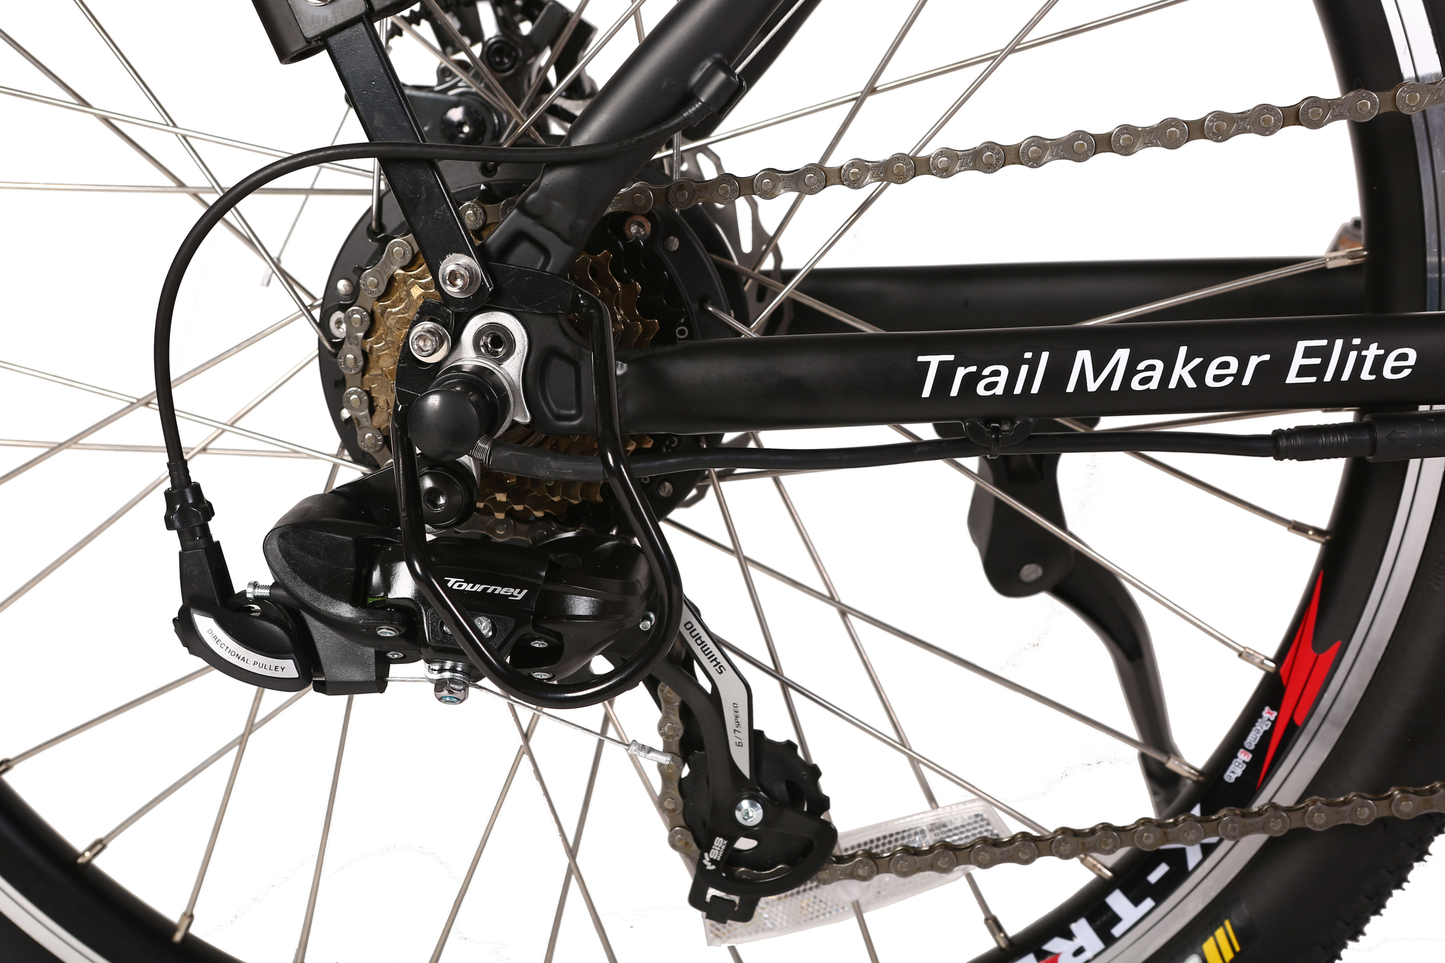 X-Treme Trail Maker Elite 24 Volt Electric Mountain Bike